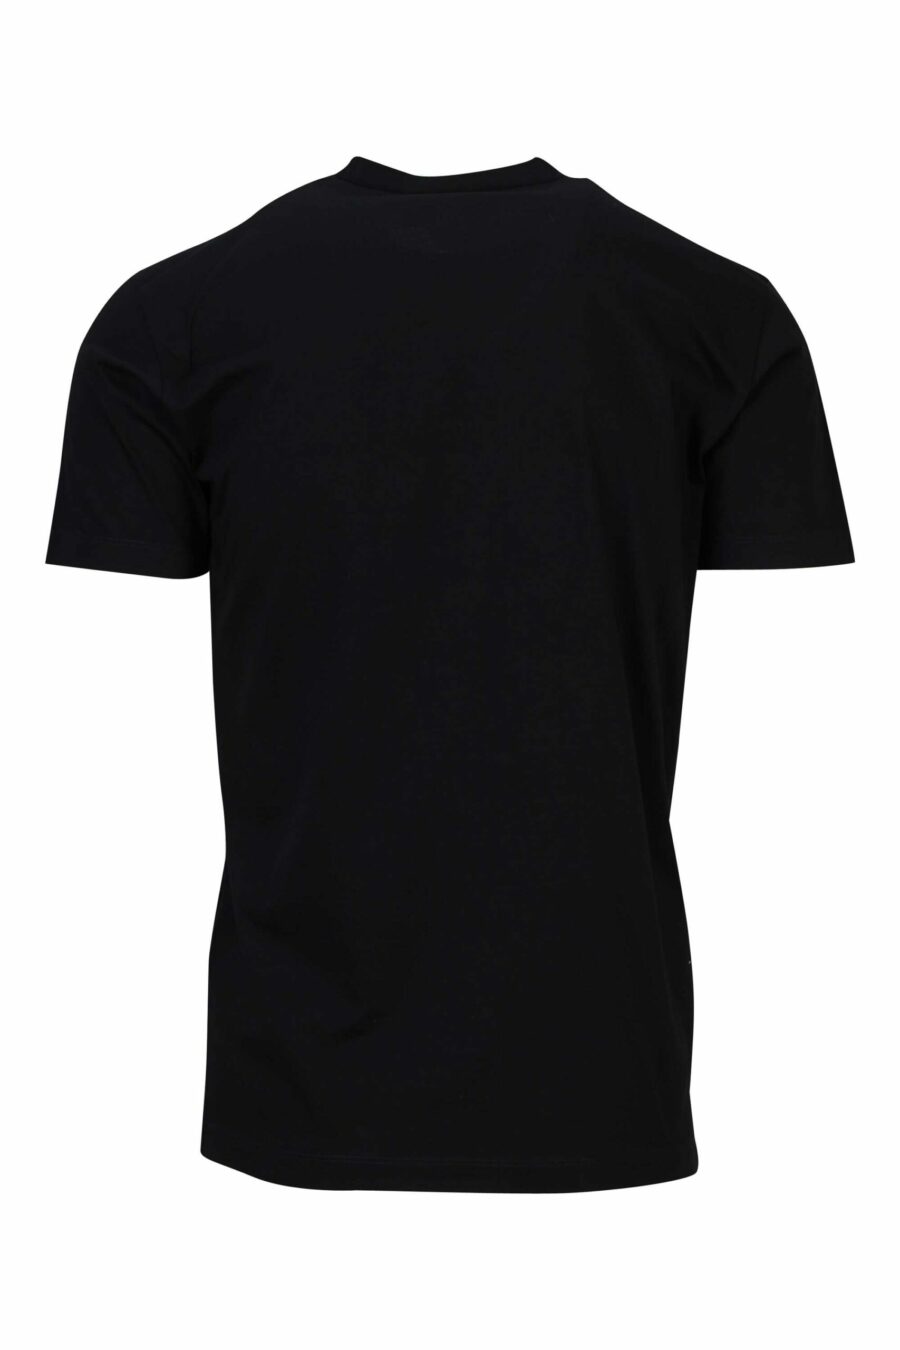 T-shirt preta com maxilogo preto em relevo - 8054148448158 1 scaled